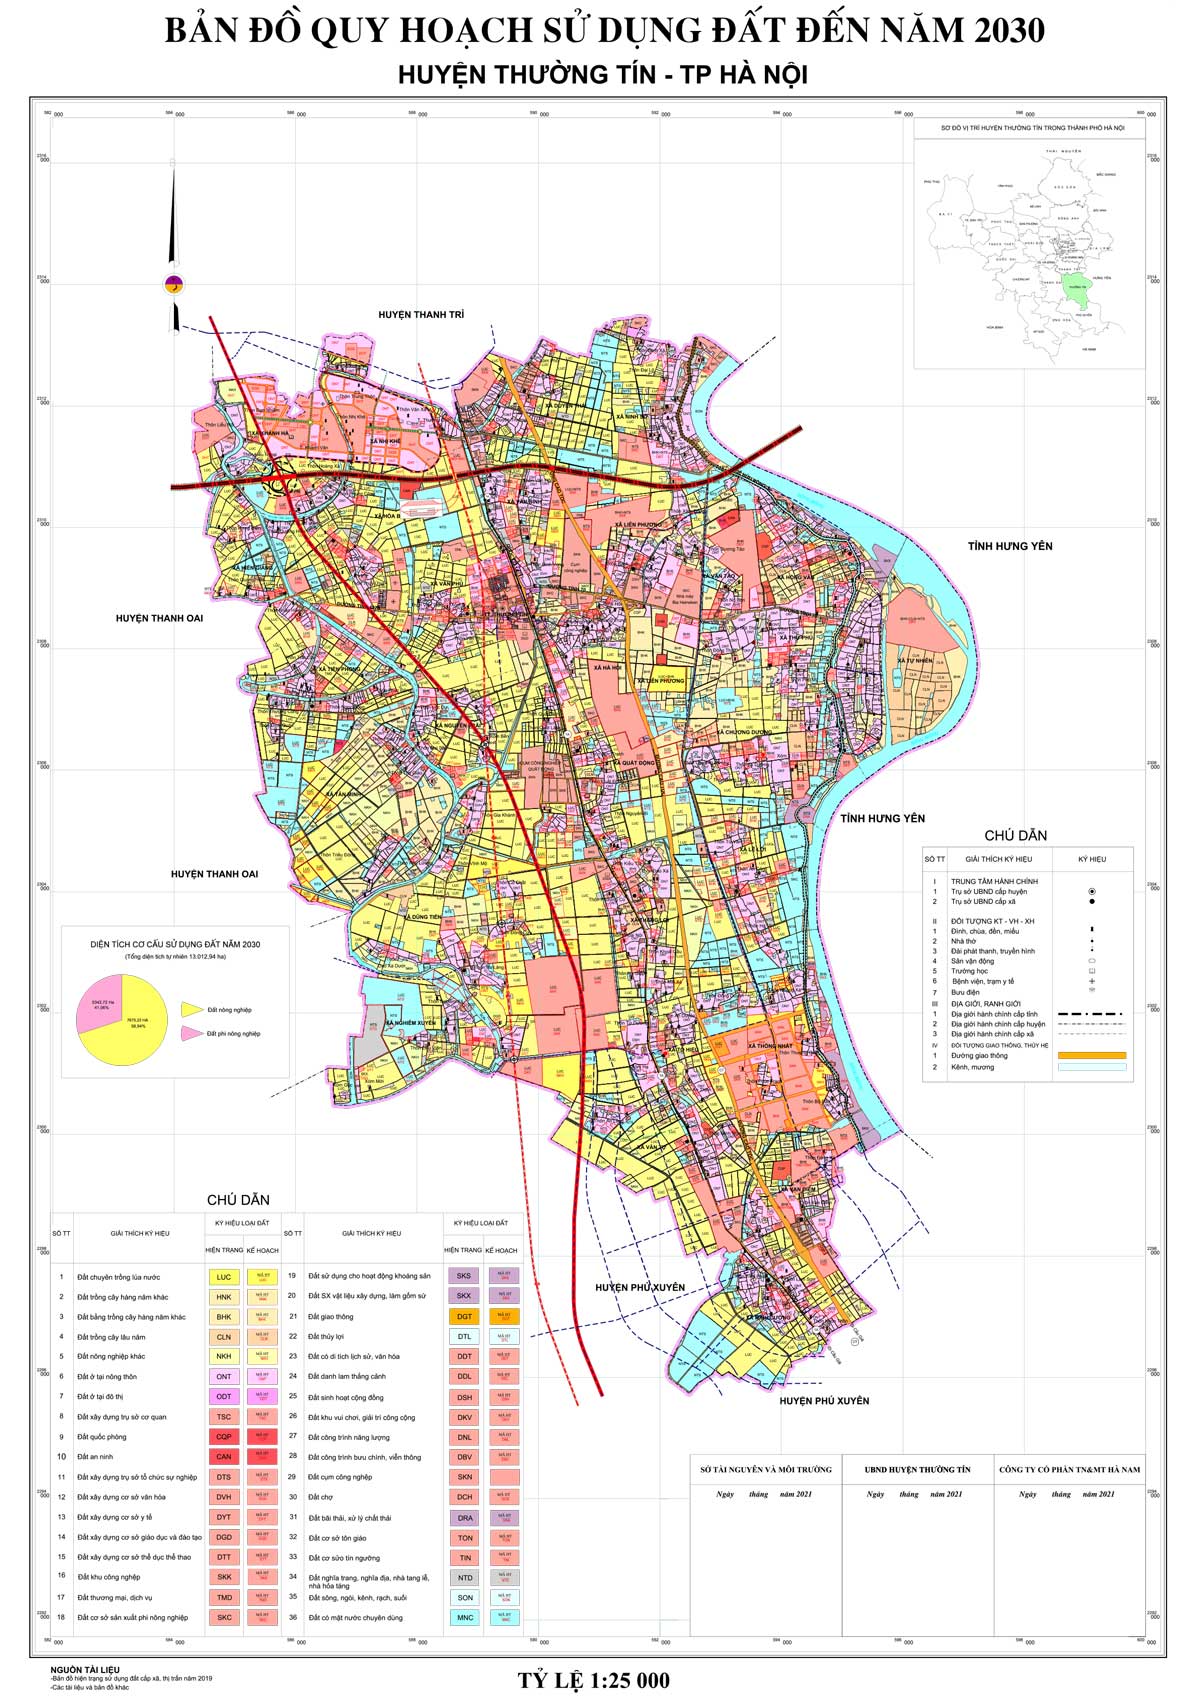 Bản đồ QHSDĐ huyện Thường Tín đến năm 2030